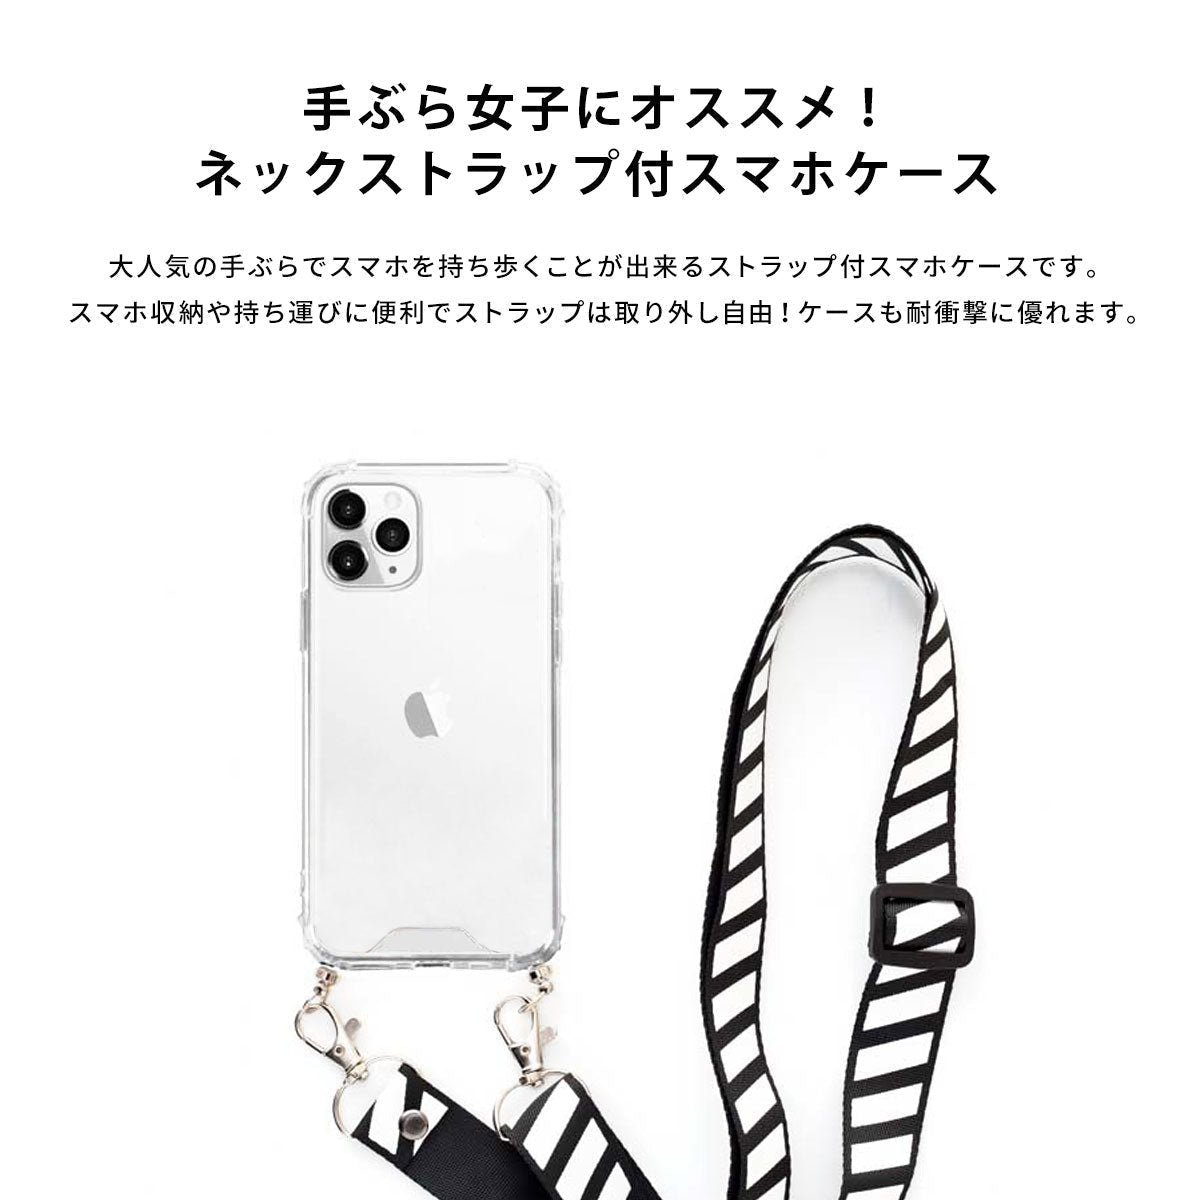 【手ぶら派に】ネックストラップ スマホケース  iPhone13 iPone12 かわいい おしゃれ  ネックストラップ付き うさぎ 名入れ